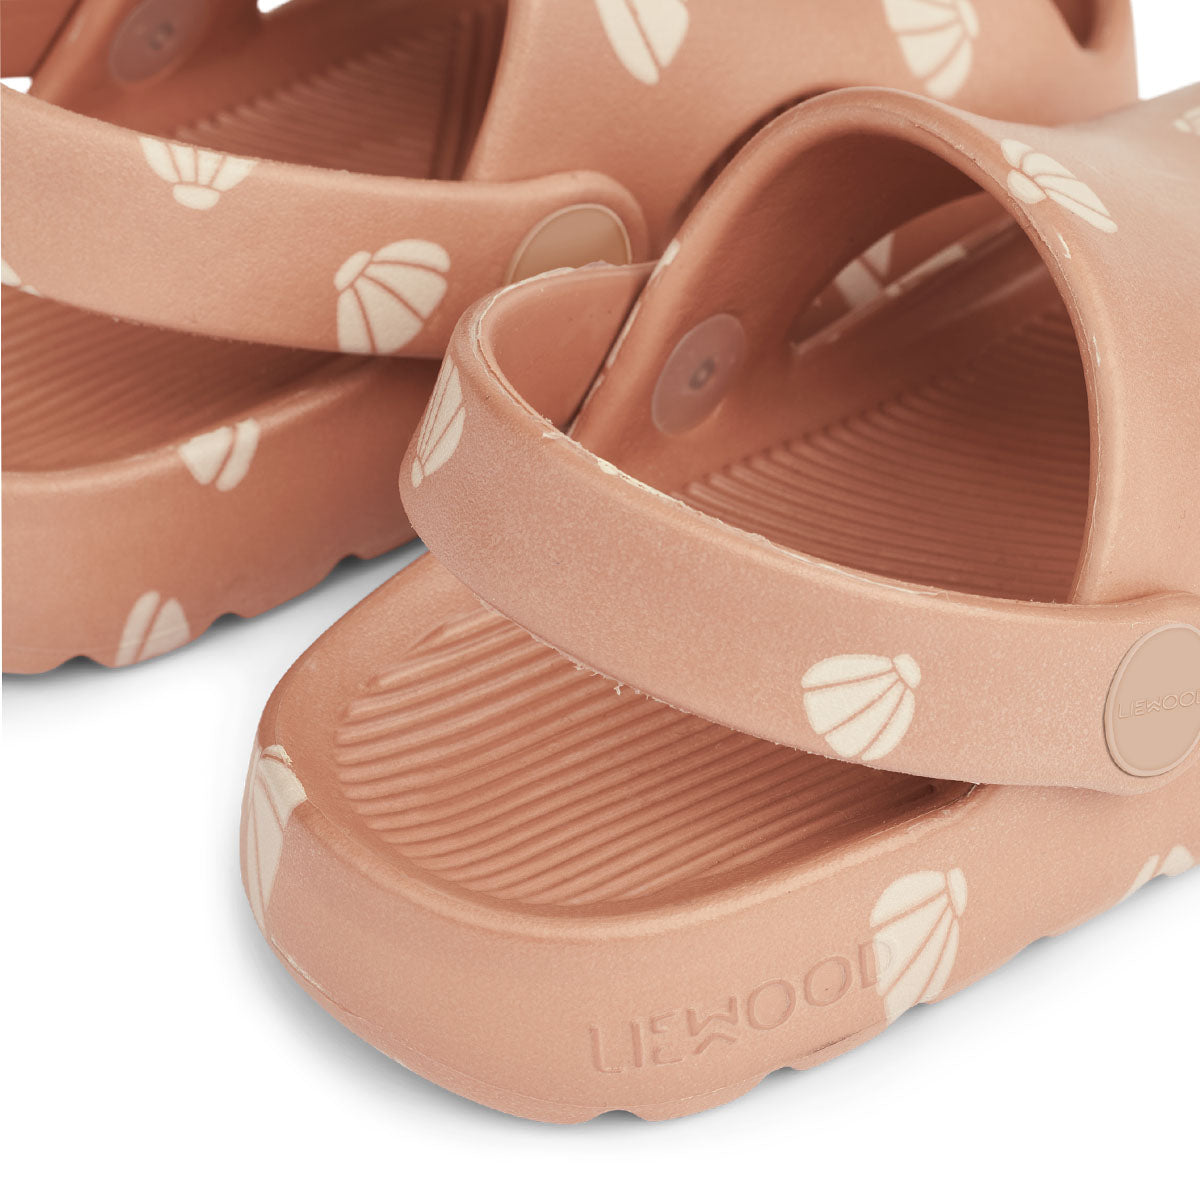 Ben je op zoek naar praktische én leuk uitziende sandalen? Dan zijn deze morris sandalen van Liewood in de kleur shell/pale tuscany ideaal! Deze sandalen zitten namelijk enorm comfortabel, dankzij het zachte en lichtgewicht materiaal, maar zien er ook stijlvol uit. VanZus